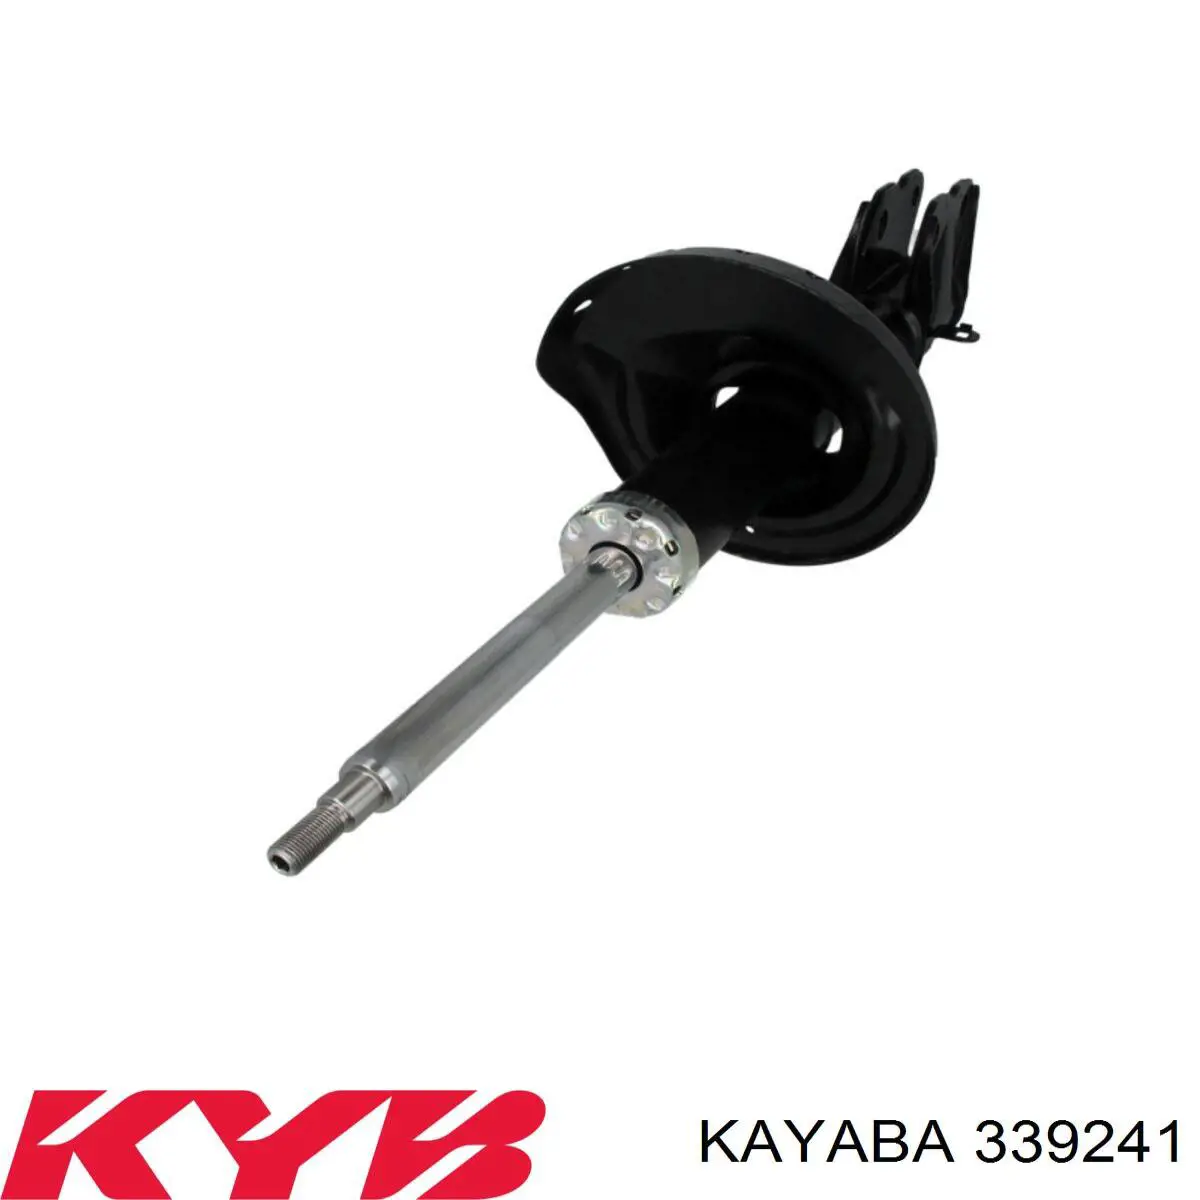 339241 Kayaba amortiguador delantero izquierdo